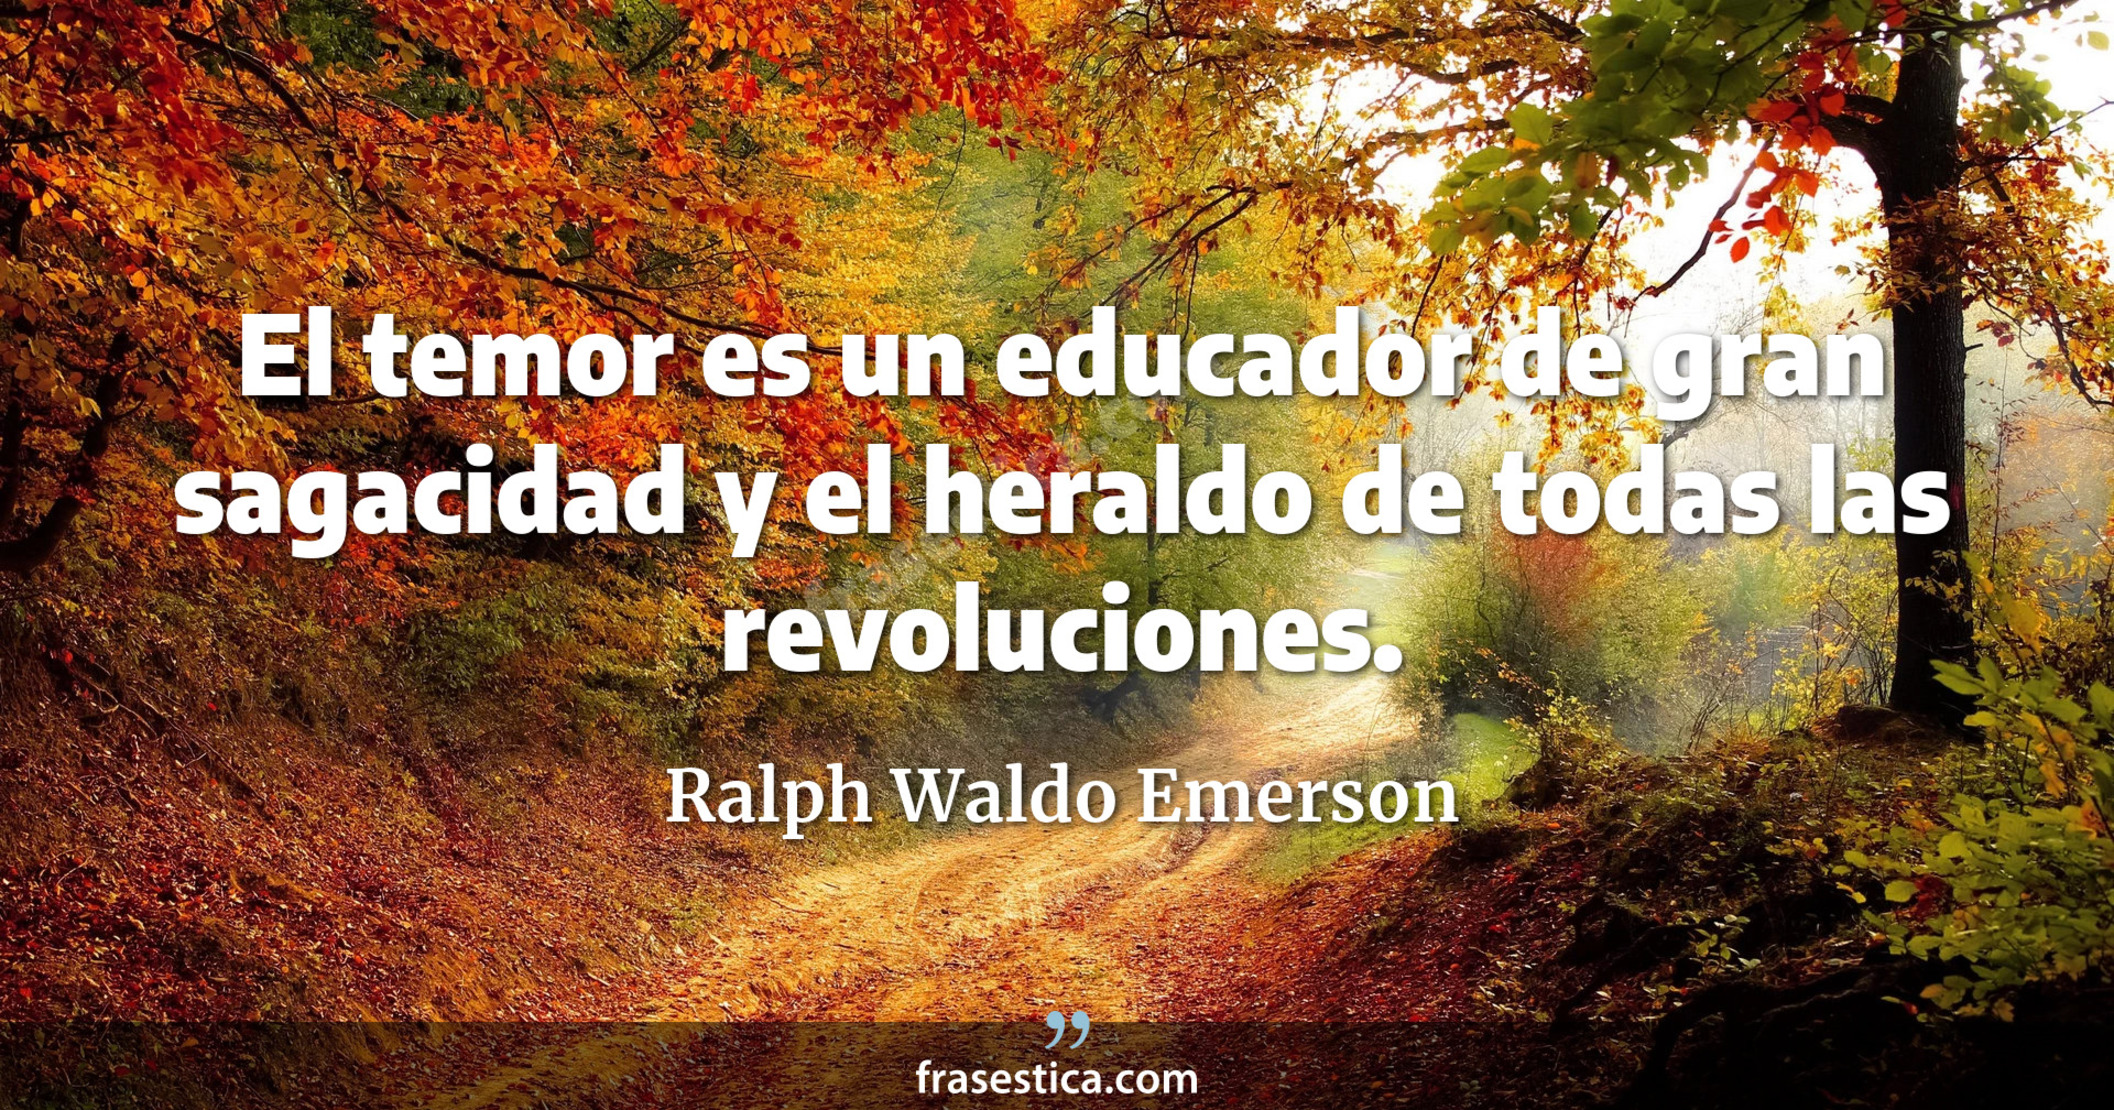 El temor es un educador de gran sagacidad y el heraldo de todas las revoluciones. - Ralph Waldo Emerson